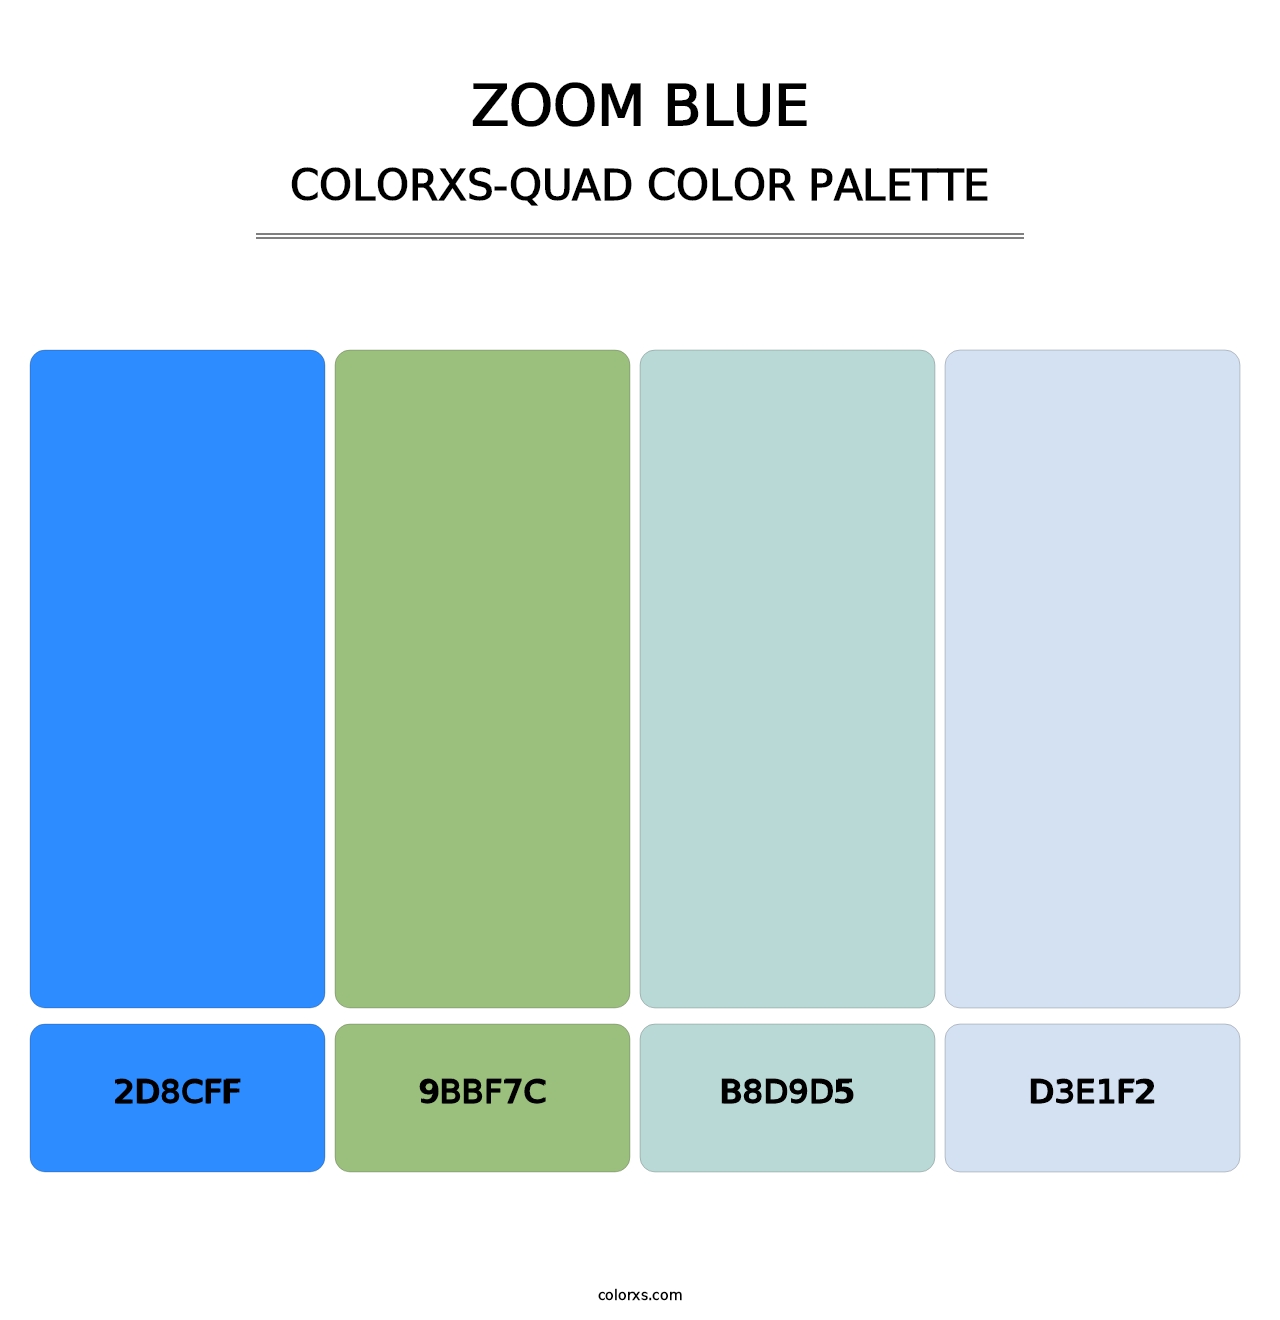 Zoom Blue - Colorxs Quad Palette